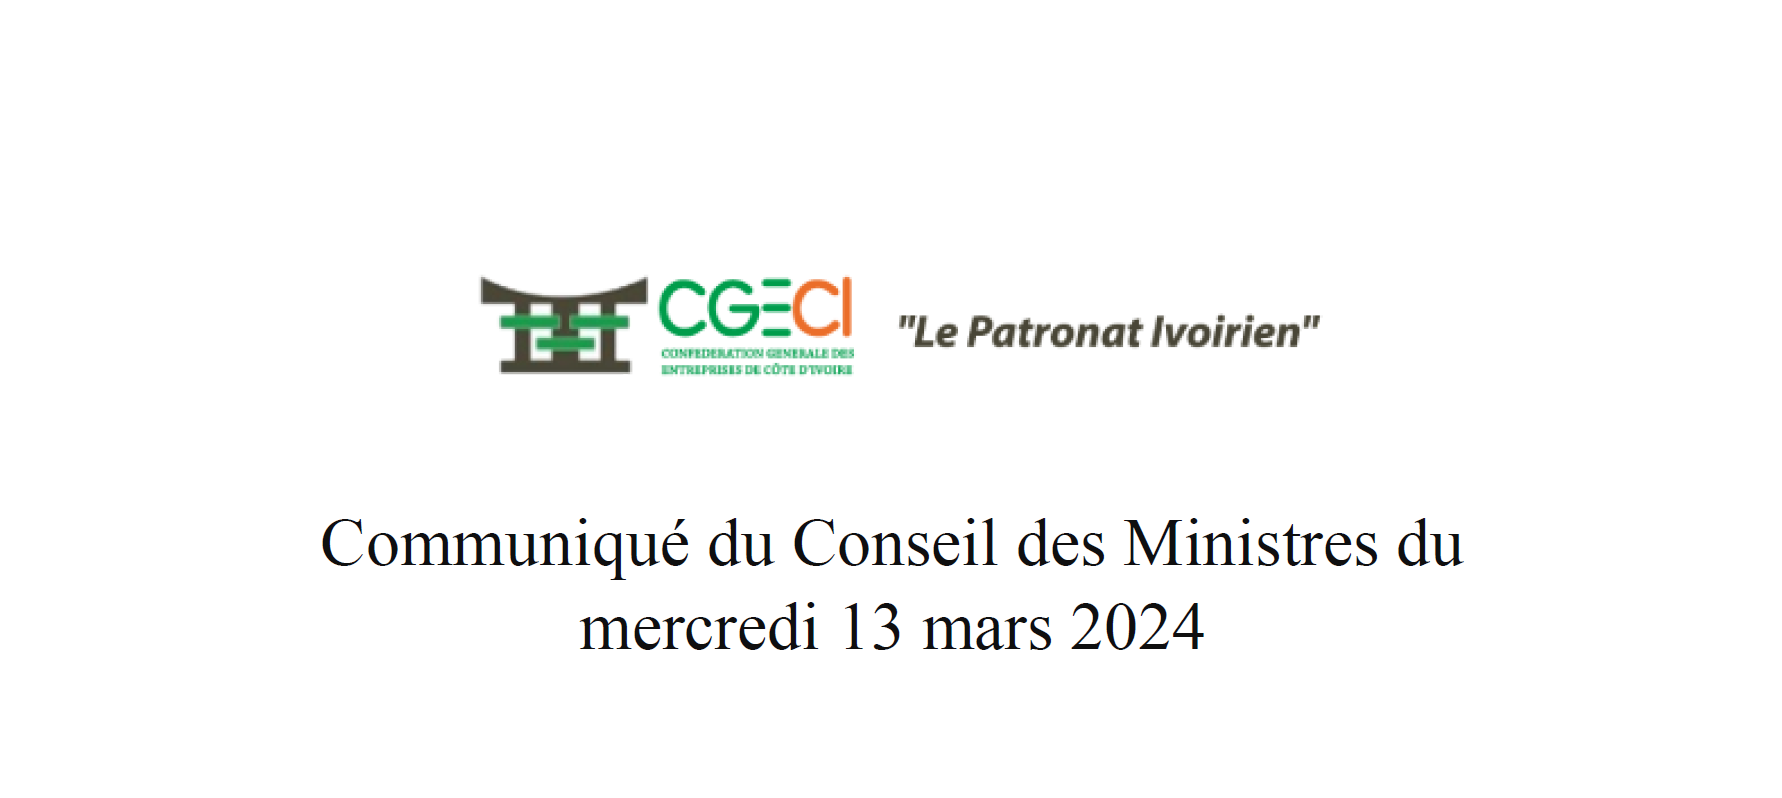 Communiqué du Conseil des Ministres du mercredi 13 mars 2024